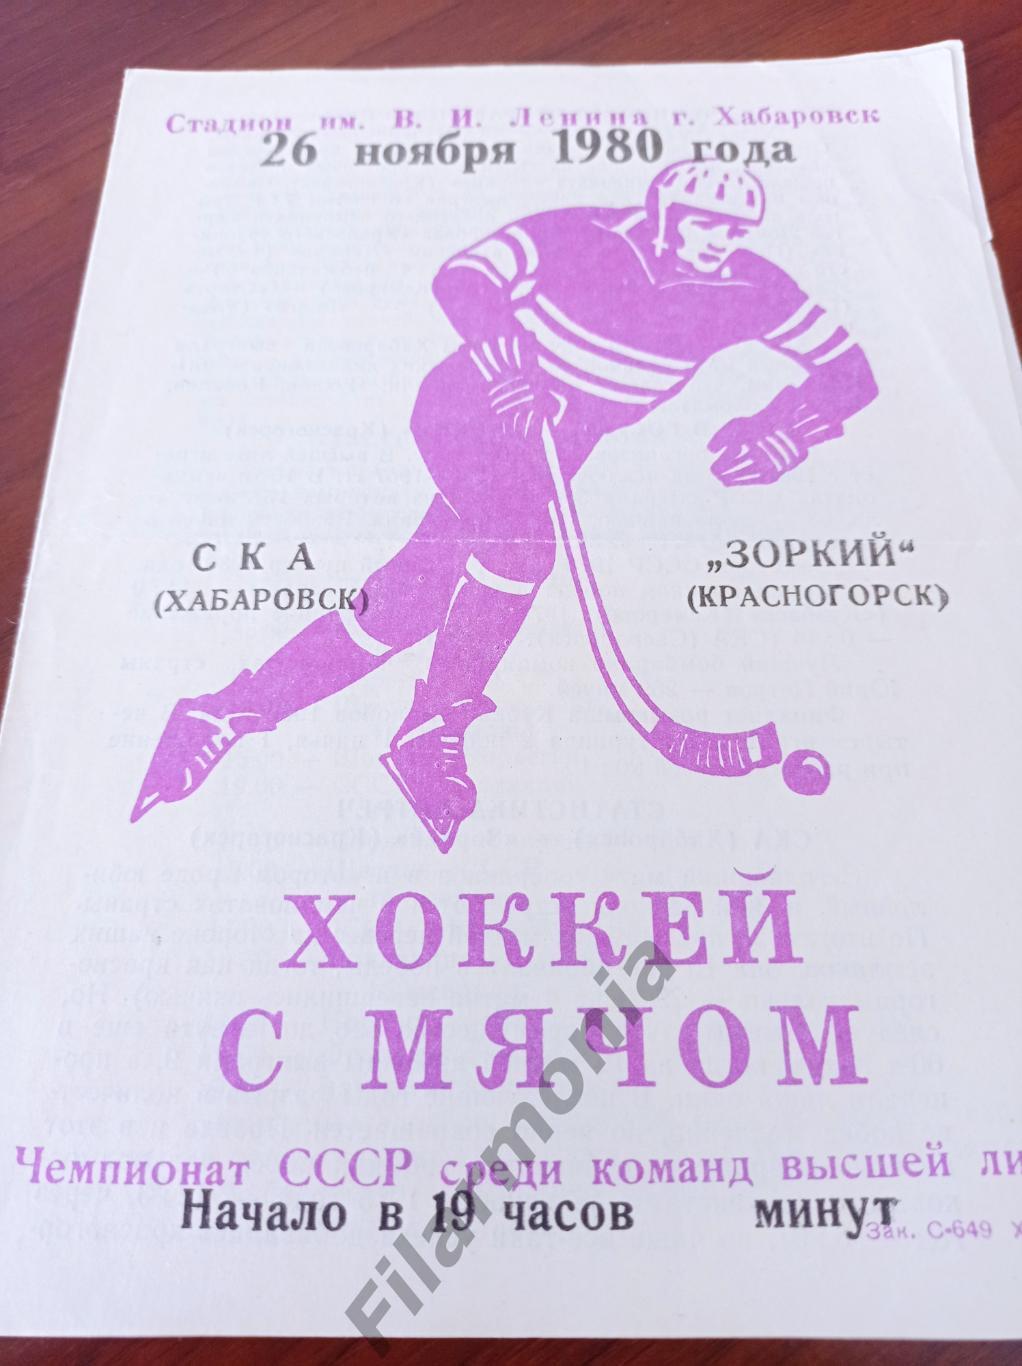 1980 СКА Хабаровск - Зоркий Красногорск